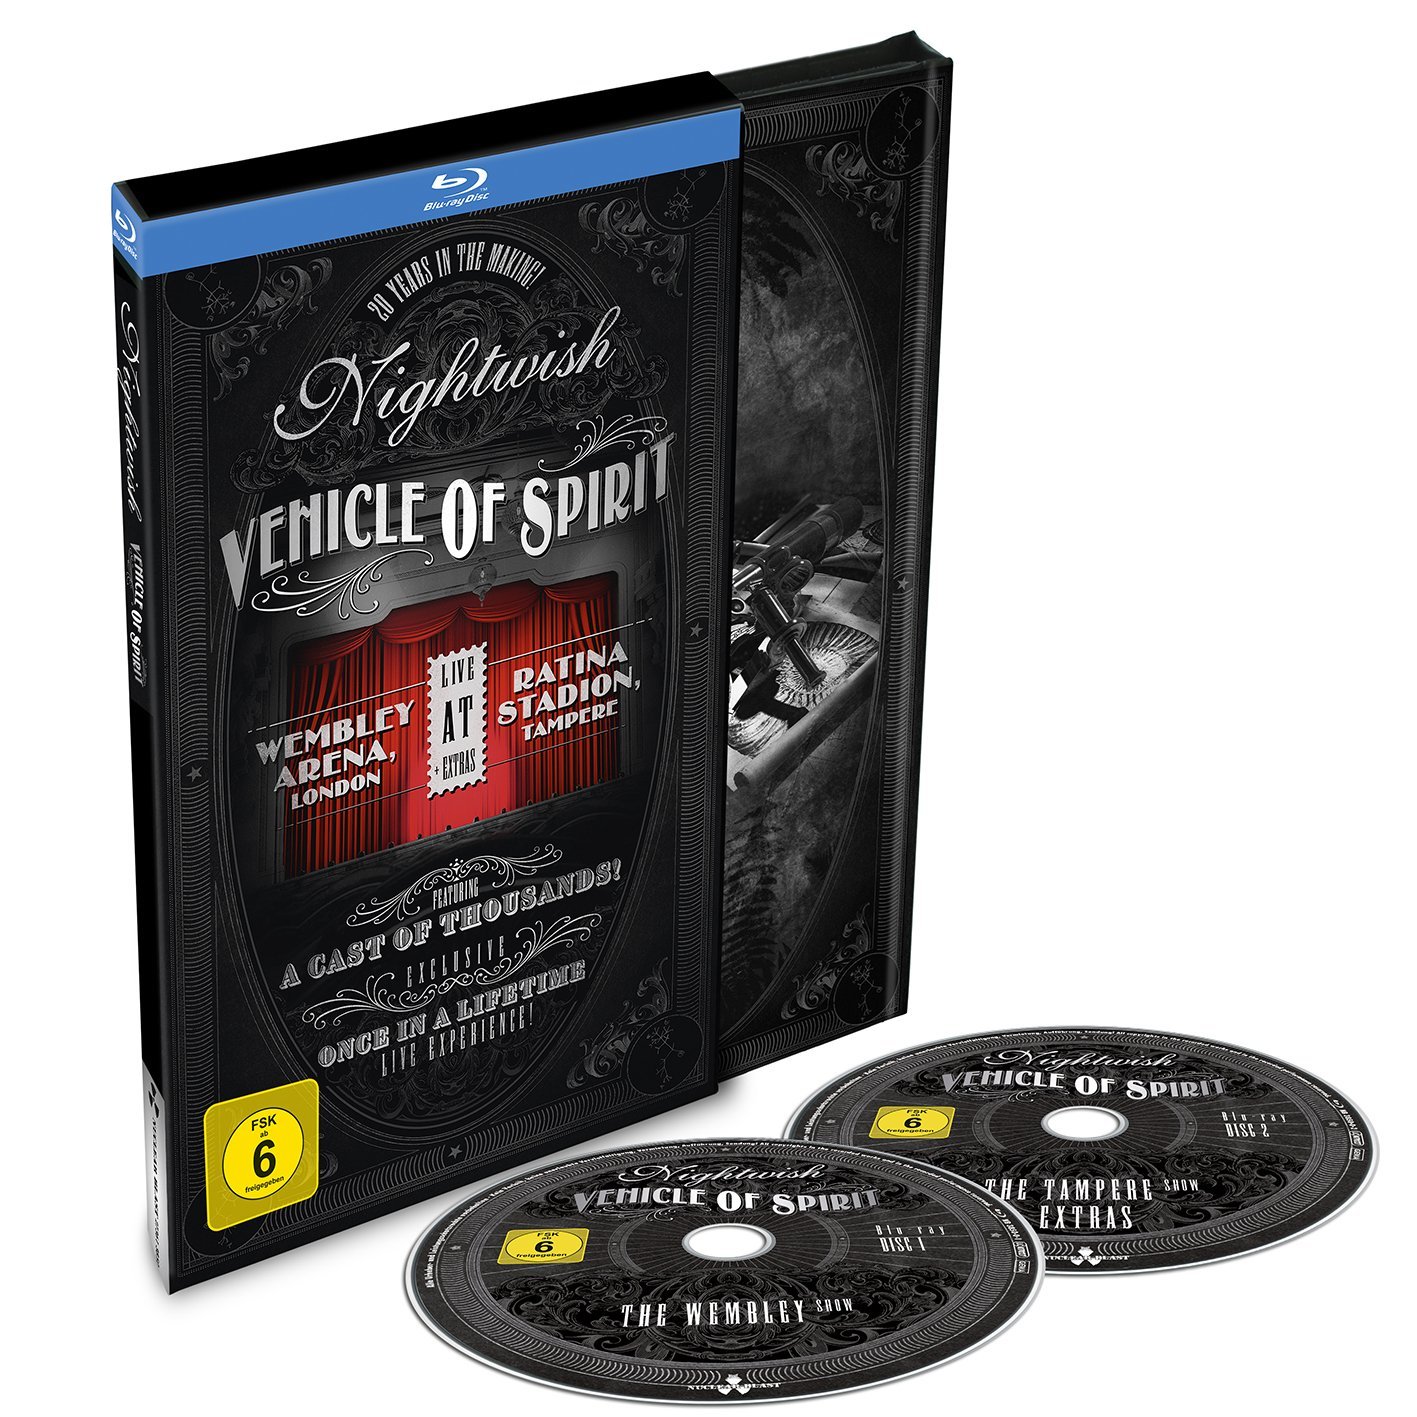 Nightwish - Vehicle of Spirit (Blu-ray), Nightwish